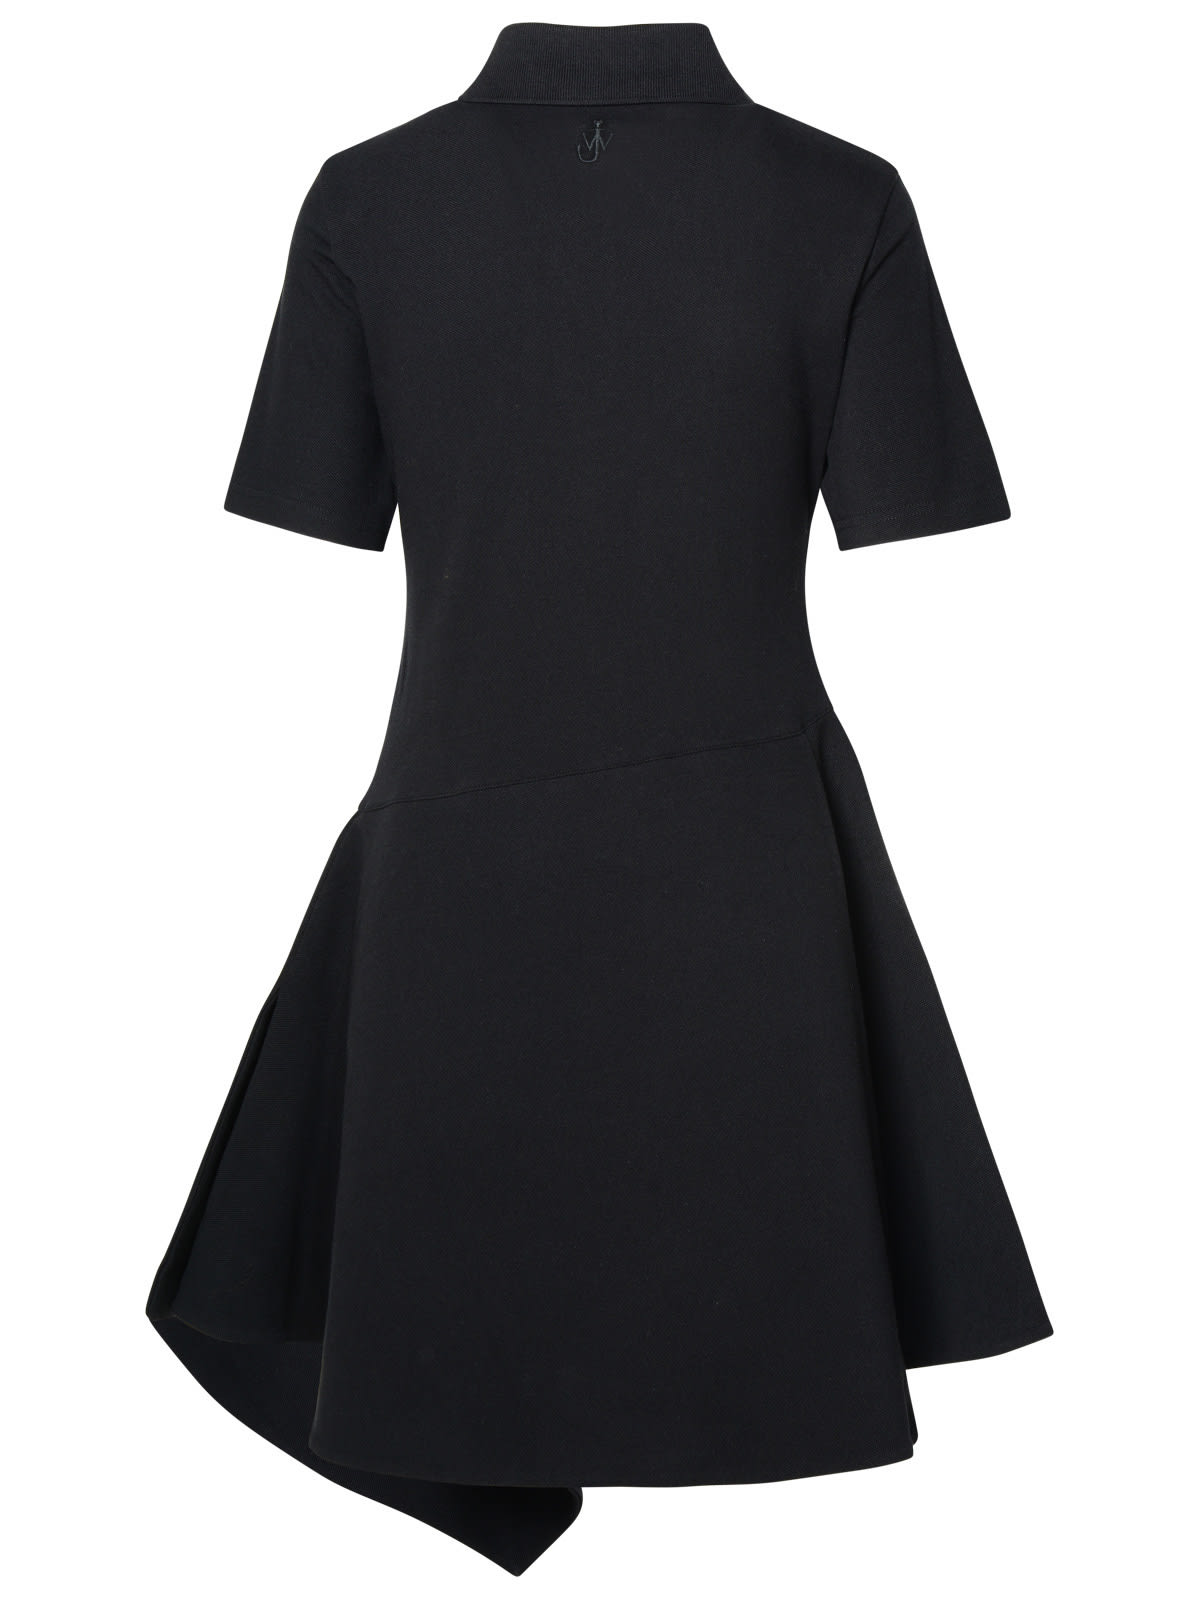 Shop Jw Anderson Black Cotton Dress